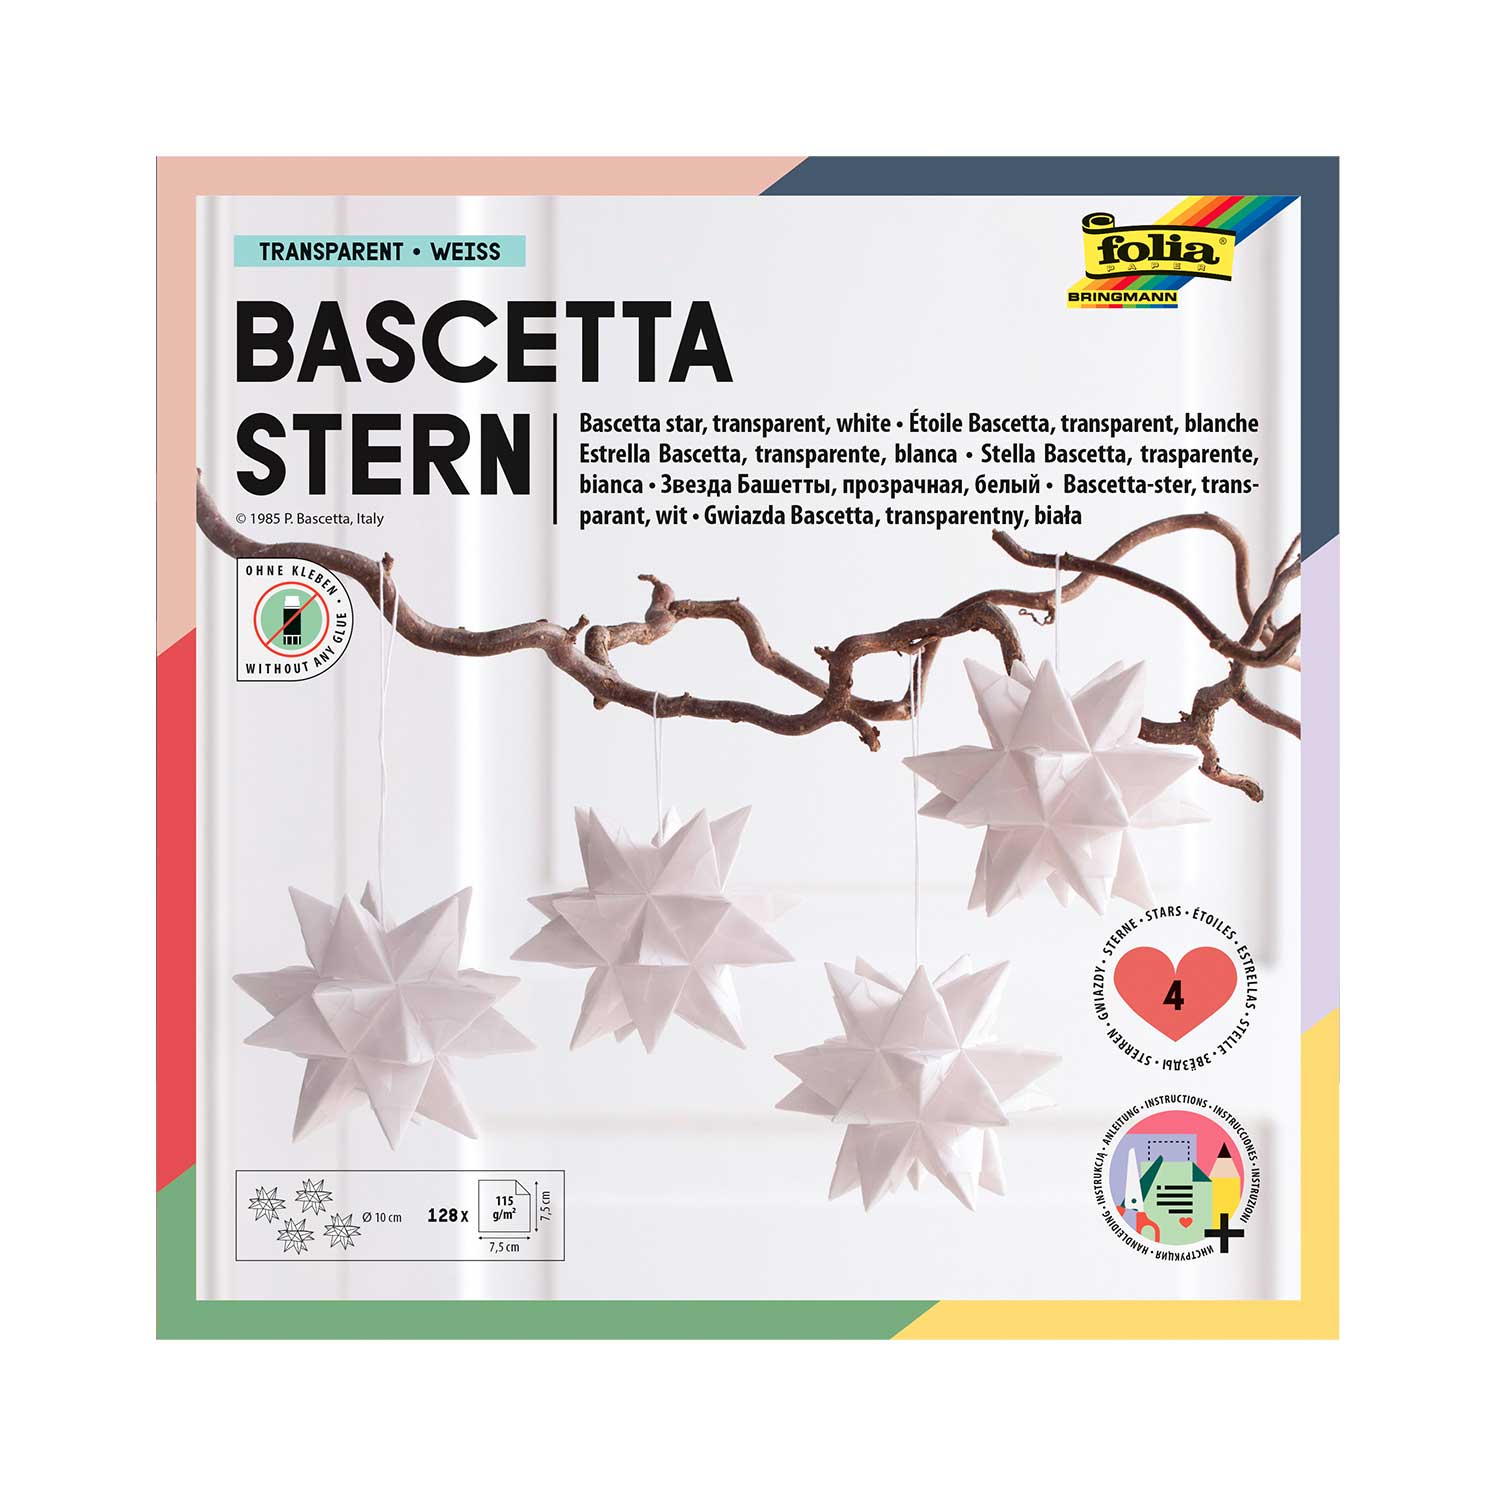 Bascetta-Stern Bastelset 128 Blatt 7,5 x 7,5 cm Transparentpapier weiß